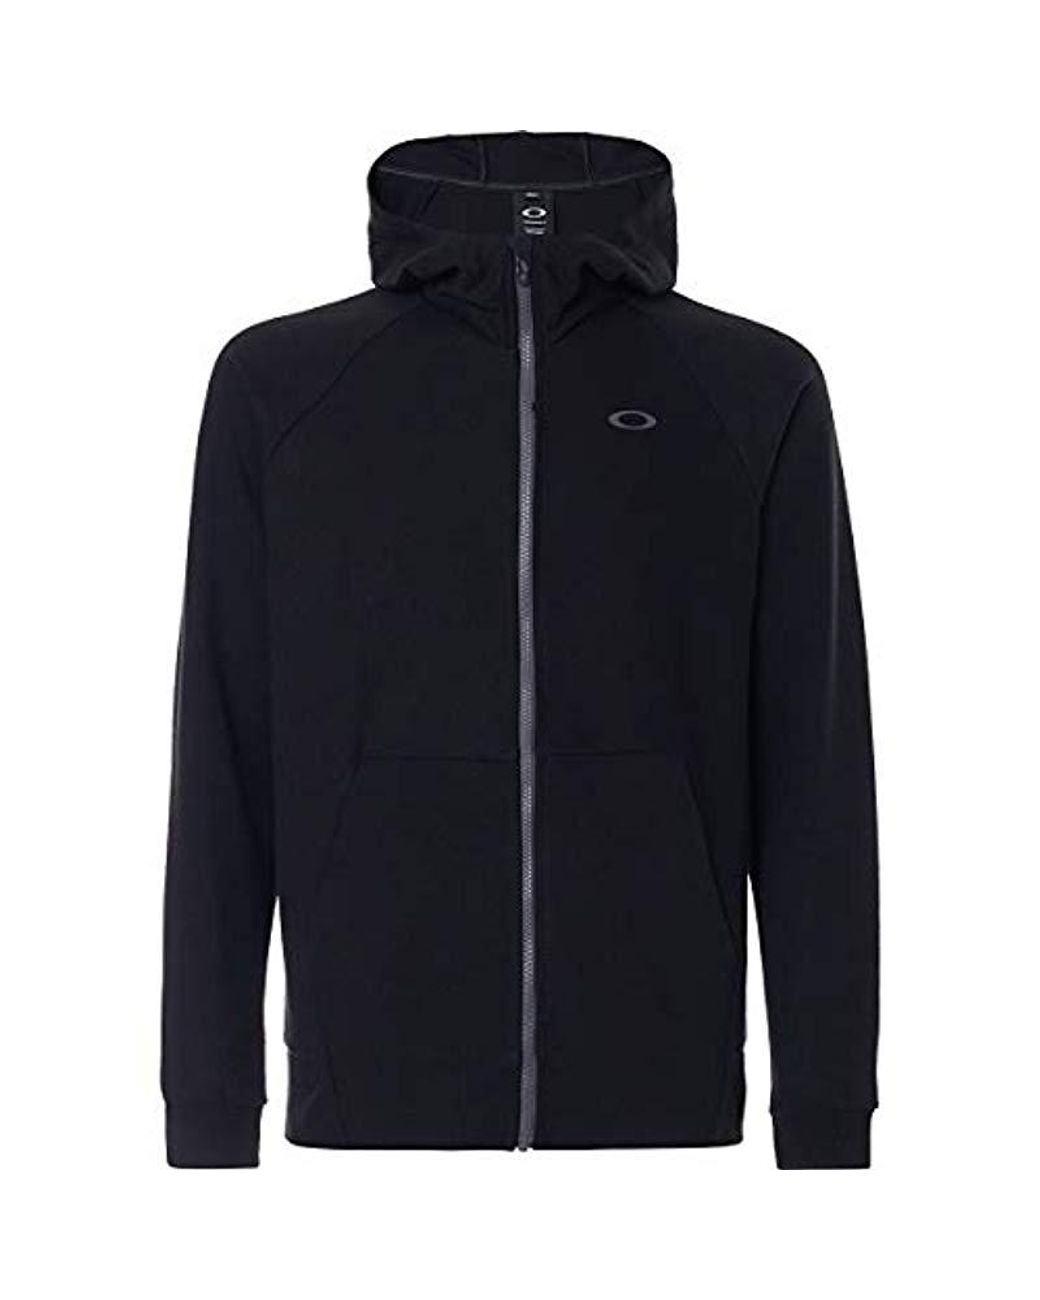 Oakley Enhance Technical Fleece Jacket.tc 8.7 in Blue for Men - Lyst